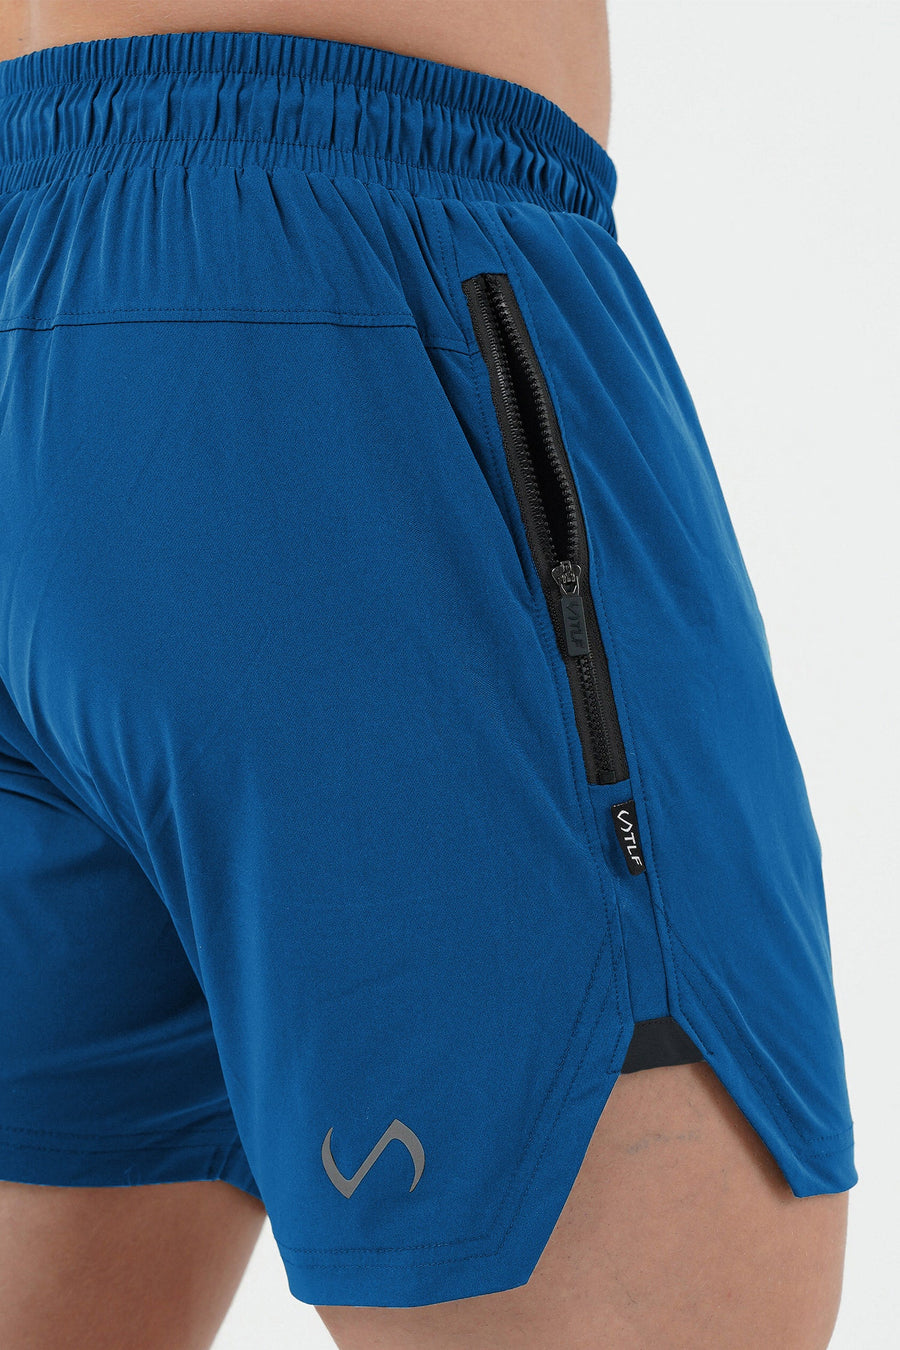 TLF Vital Element 5” Gym Shorts - 5 Inch inseam Athletic Shorts - Blue - 4